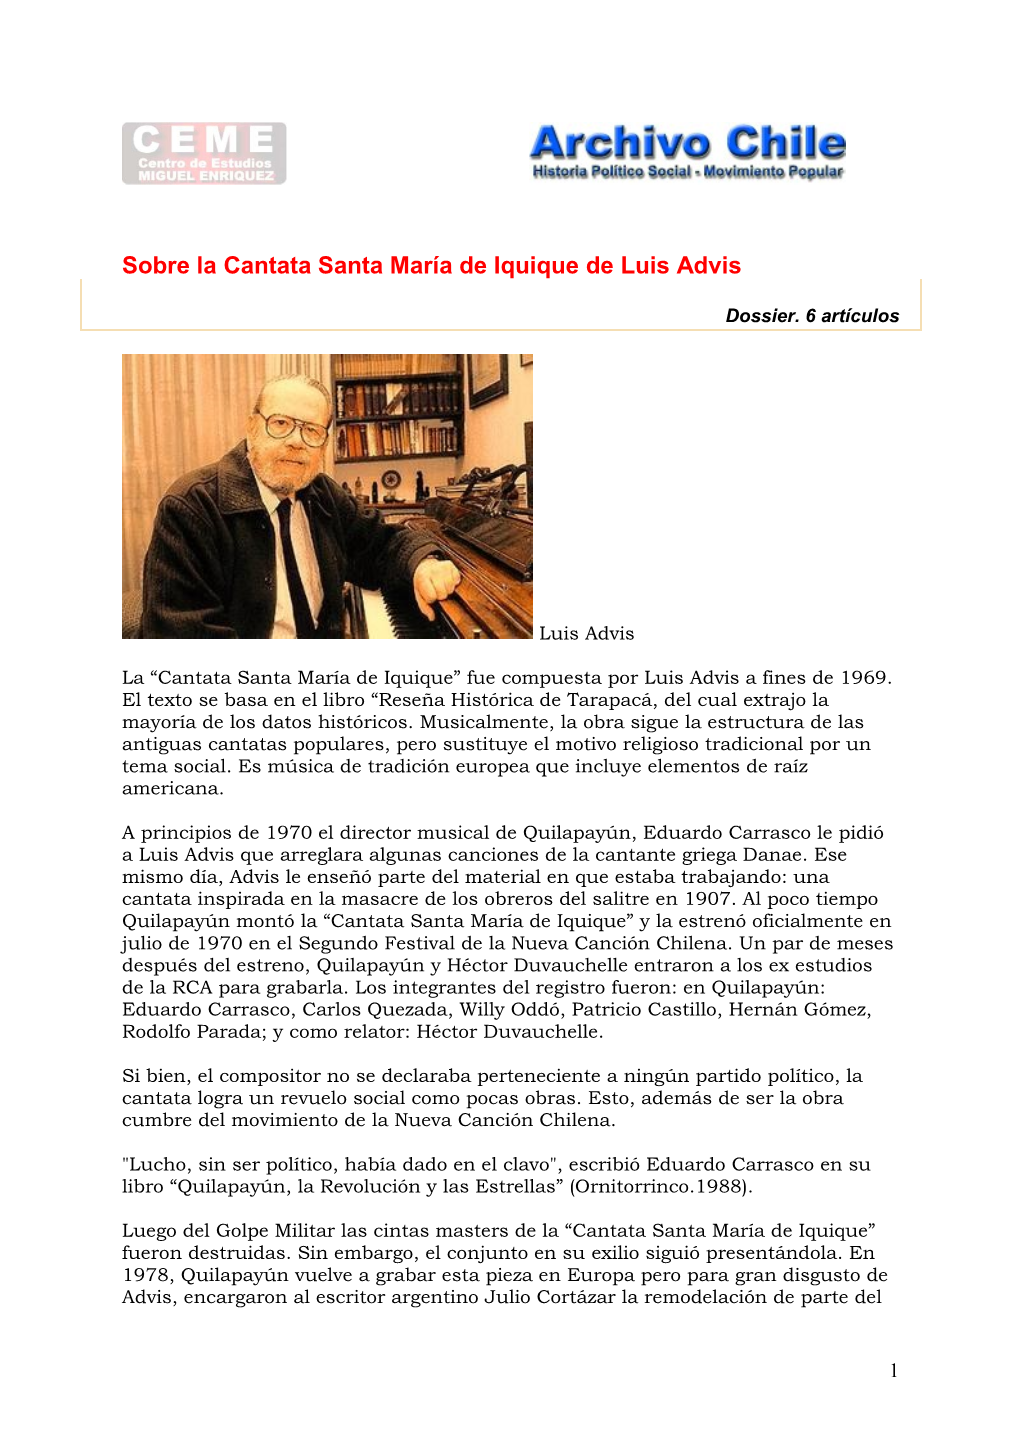 Sobre La Cantata Santa María De Iquique De Luis Advis. Dossier